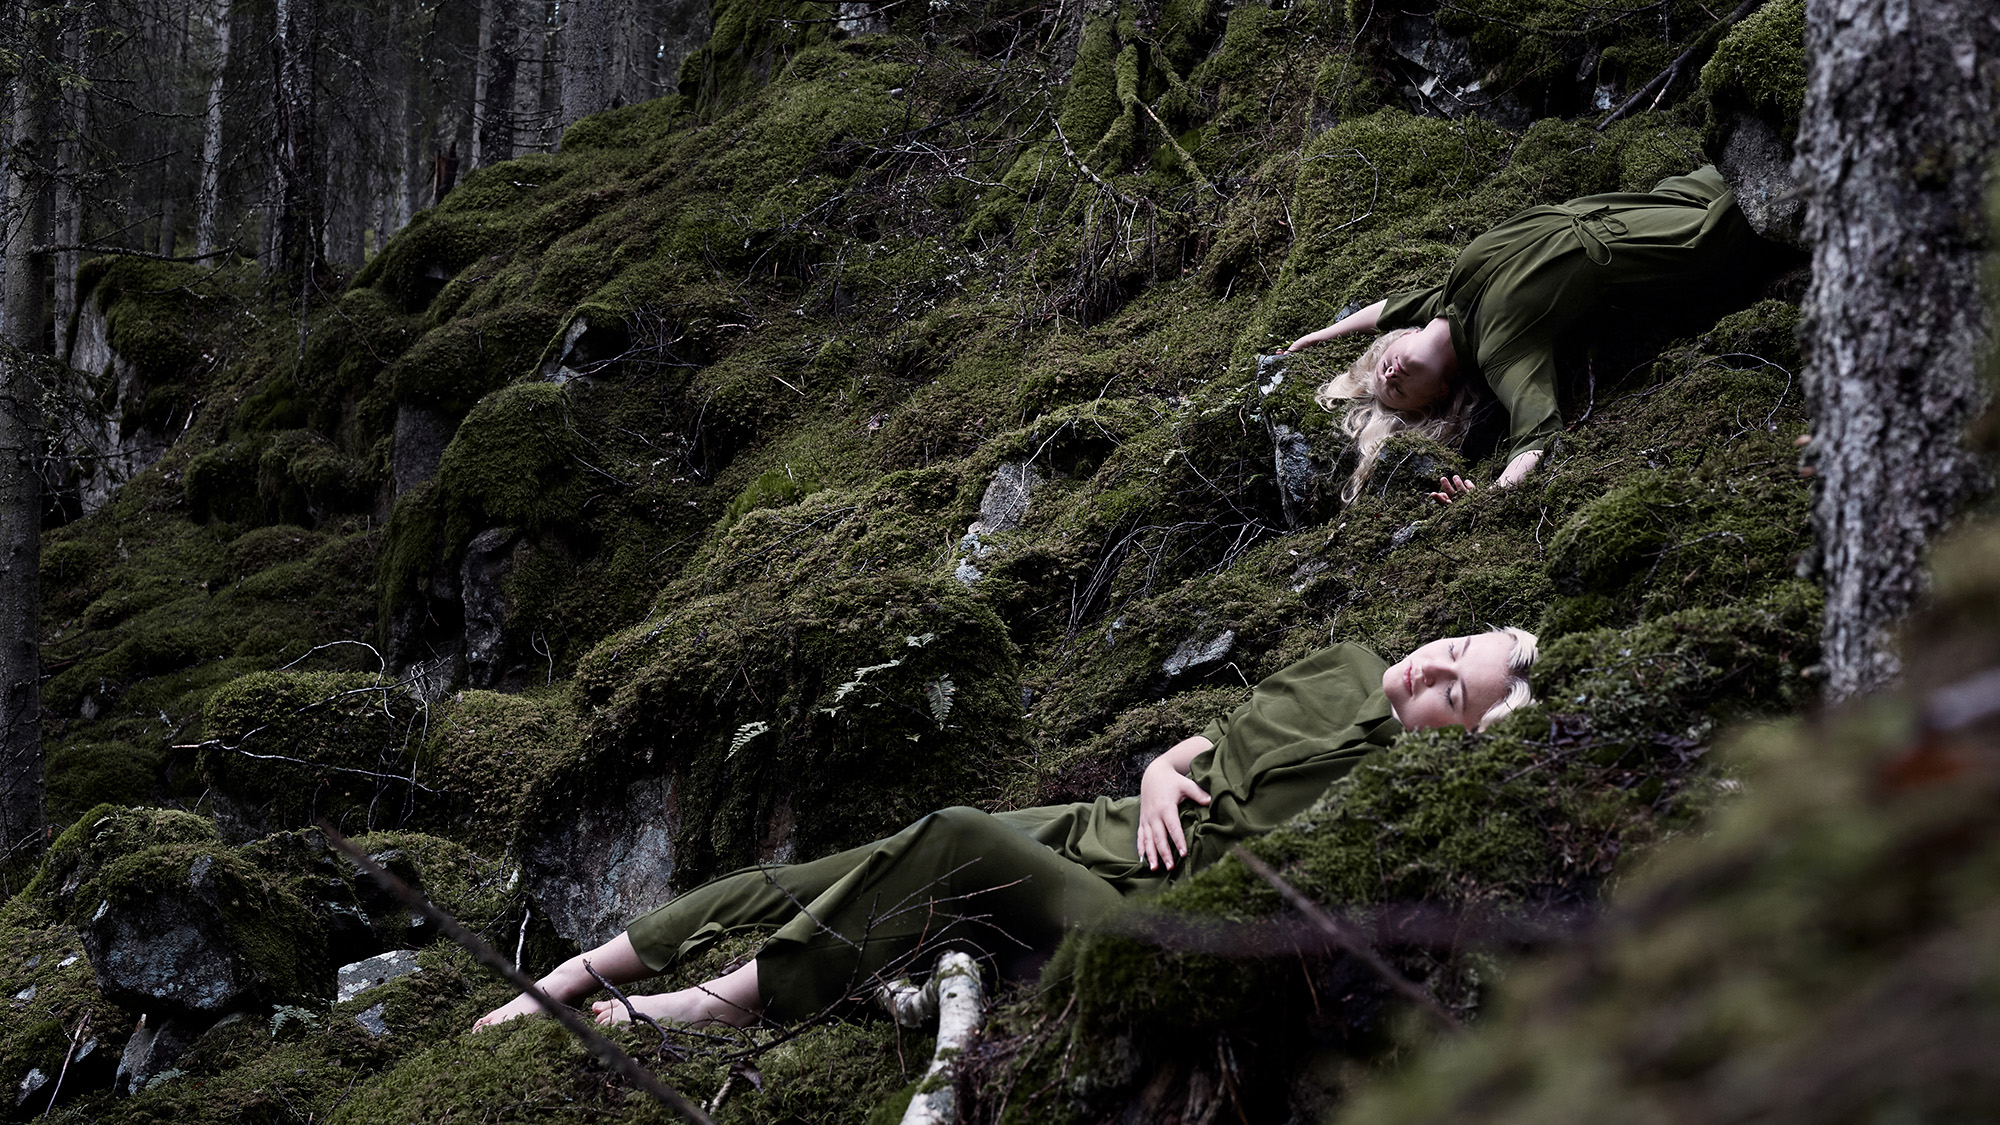 Två unga kvinnor ligger på mörkgrön mossa i en skog. De blundar och är liksom omfamnade av den omgivande naturen.